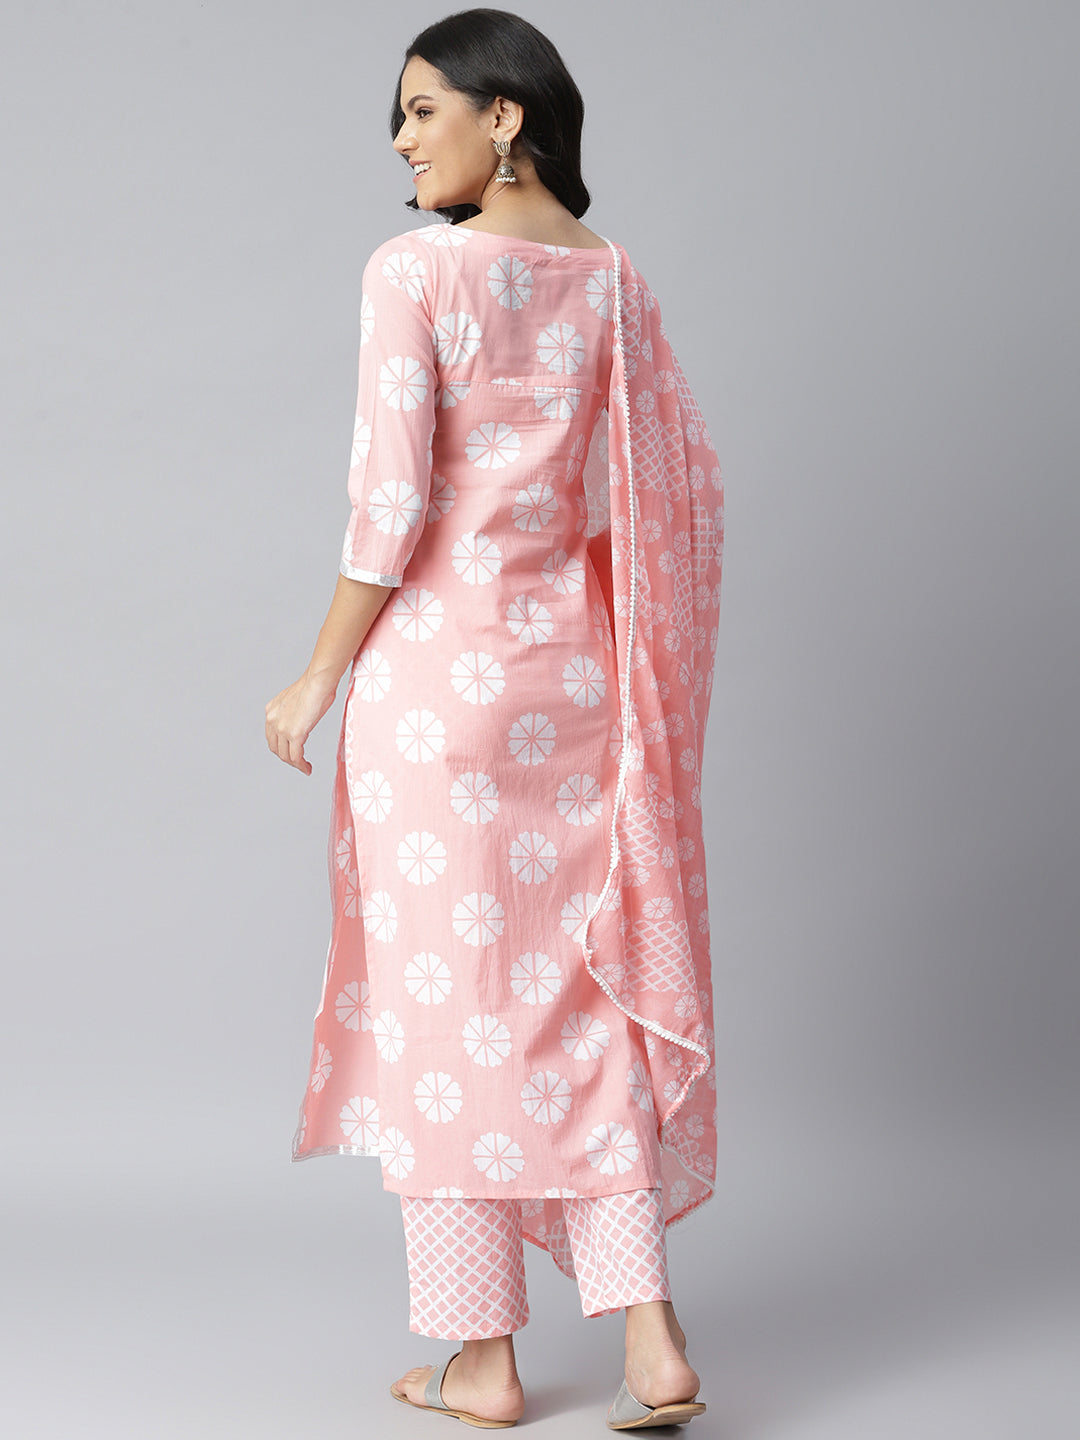 Stylum Women's Printed Cotton Straight Kurta Pant Dupatta Set (PinkChecksKpdSet)